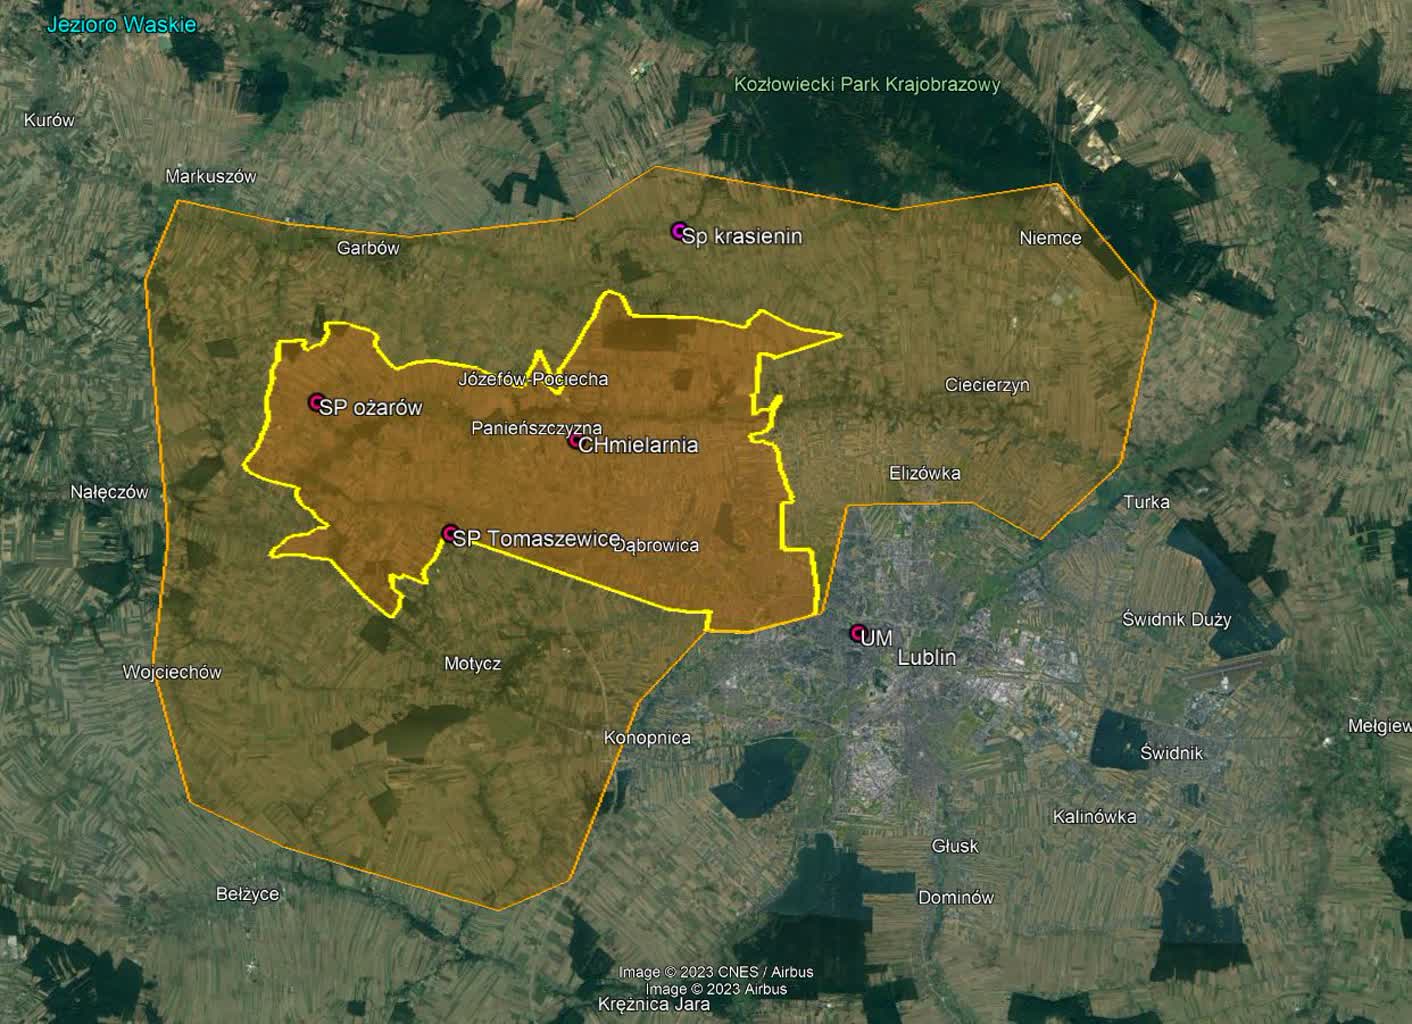 Mapka z zaznaczonym obszarem Lublina i Gminy Jastków objętym oblotami - obszar podstawowy i rozszerzony.JPG